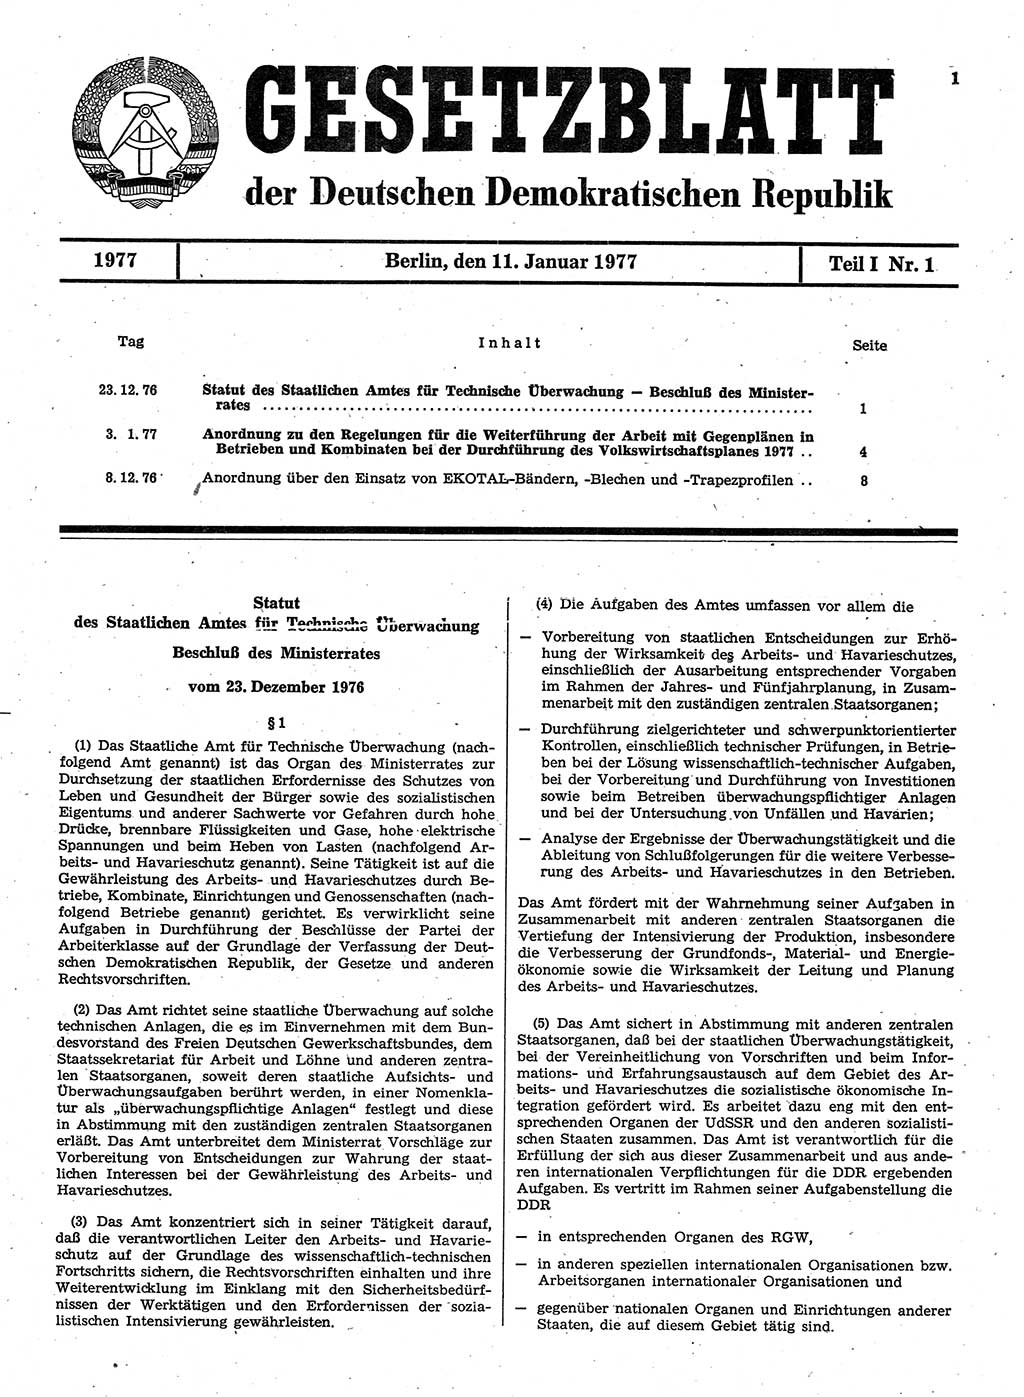 Gesetzblatt (GBl.) der Deutschen Demokratischen Republik (DDR) Teil Ⅰ 1977, Seite 1 (GBl. DDR Ⅰ 1977, S. 1)